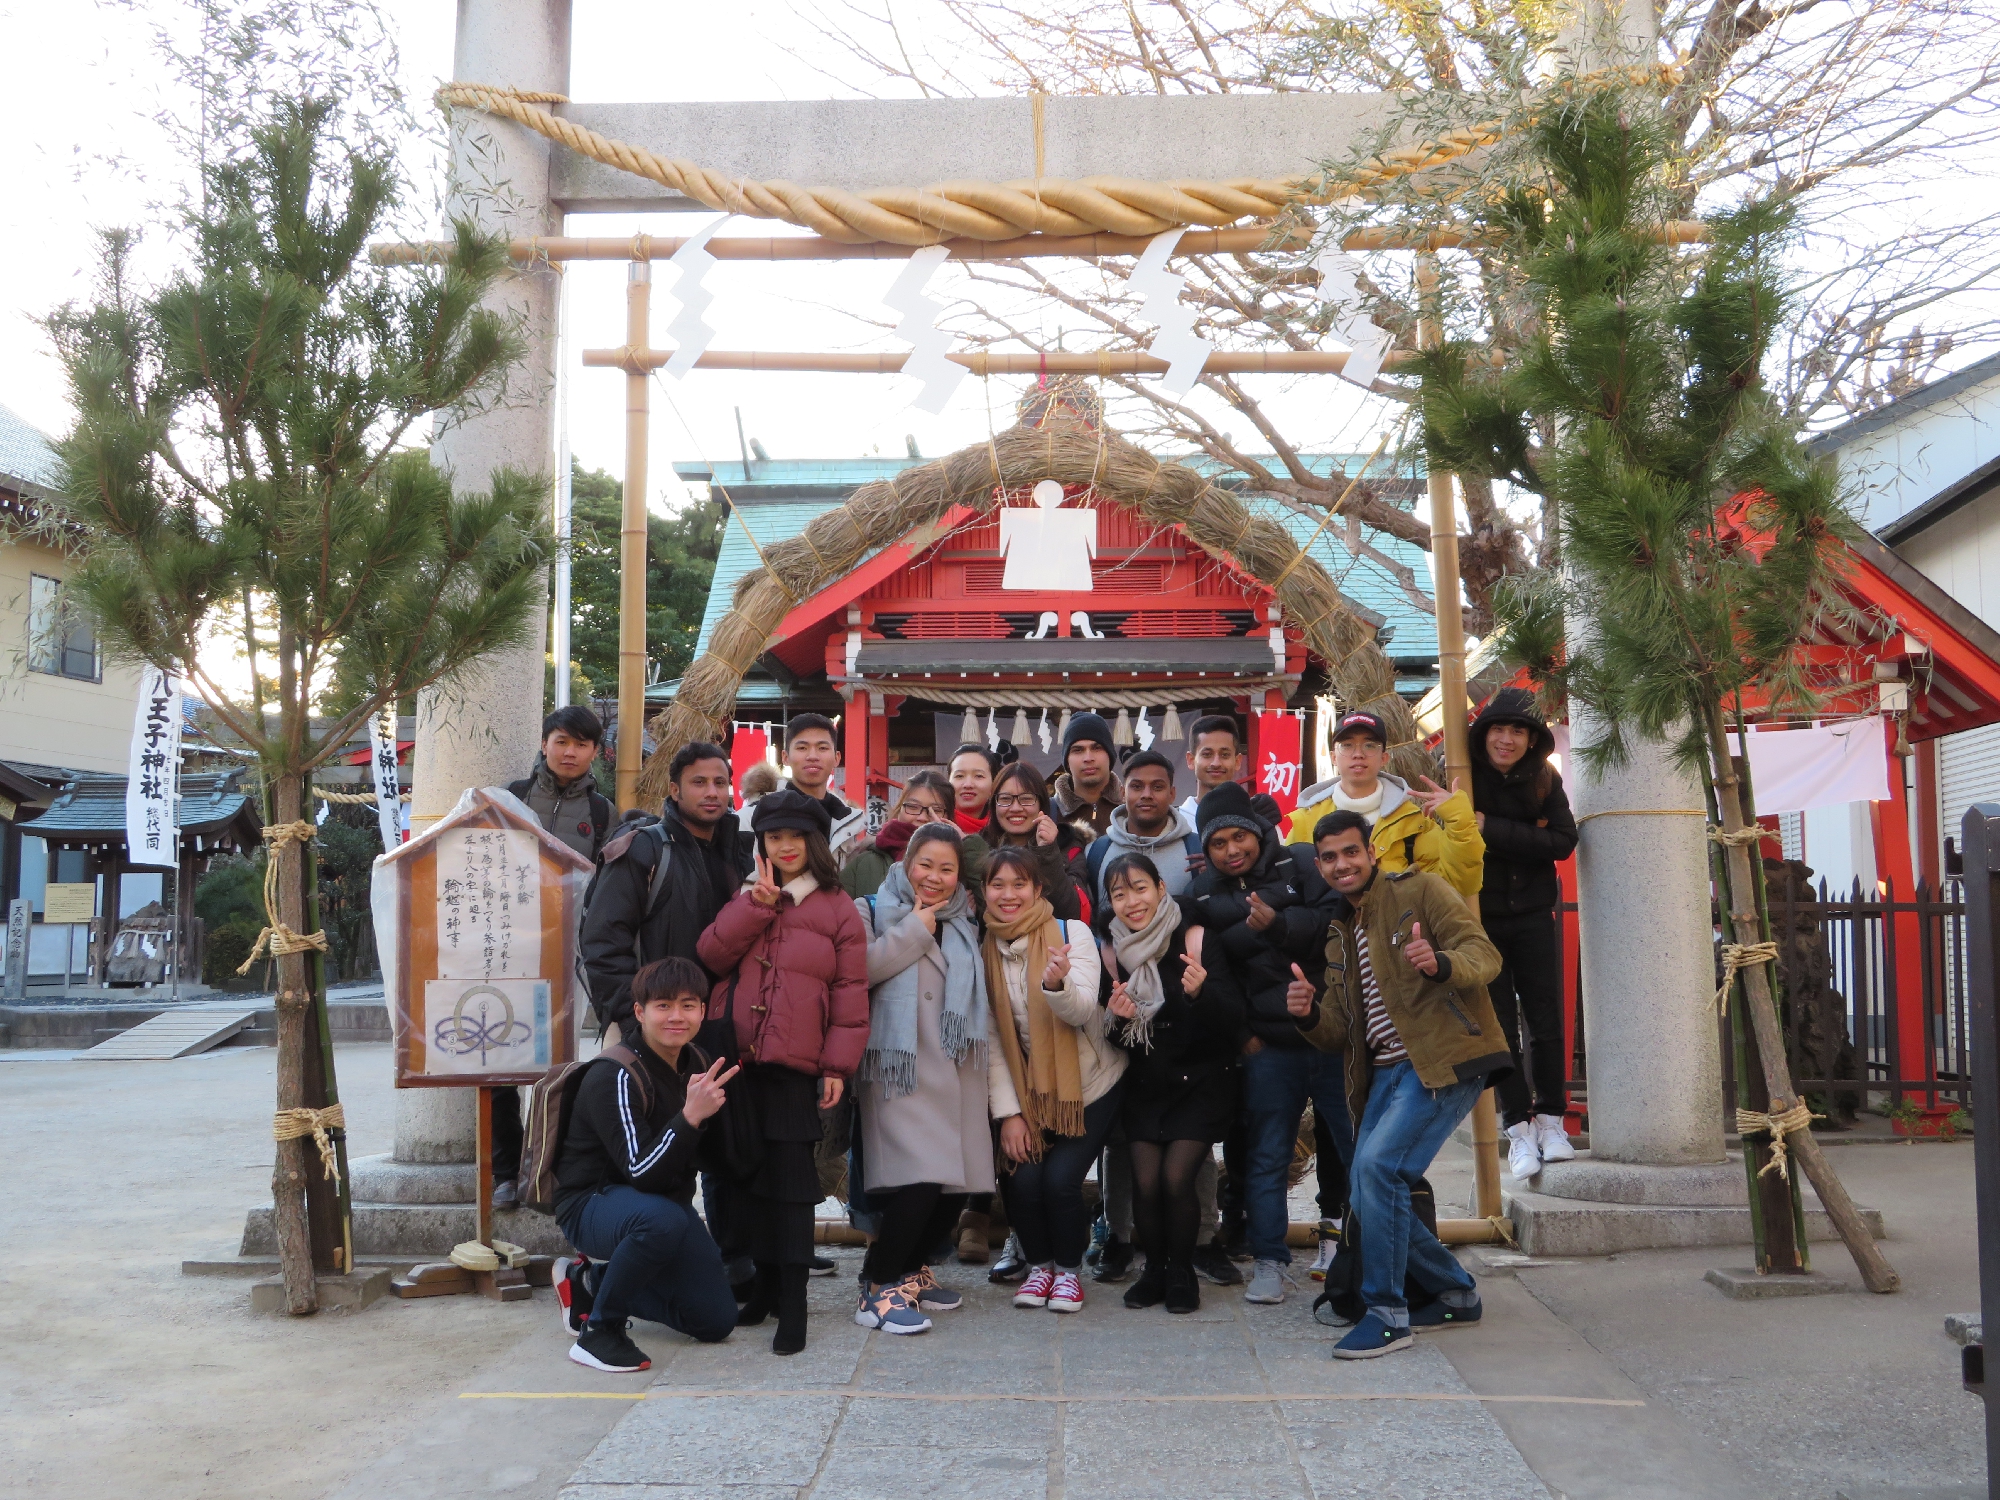 2019.1 課外授業で氷川神社に行きました。School field trip at Hikawa Shrine